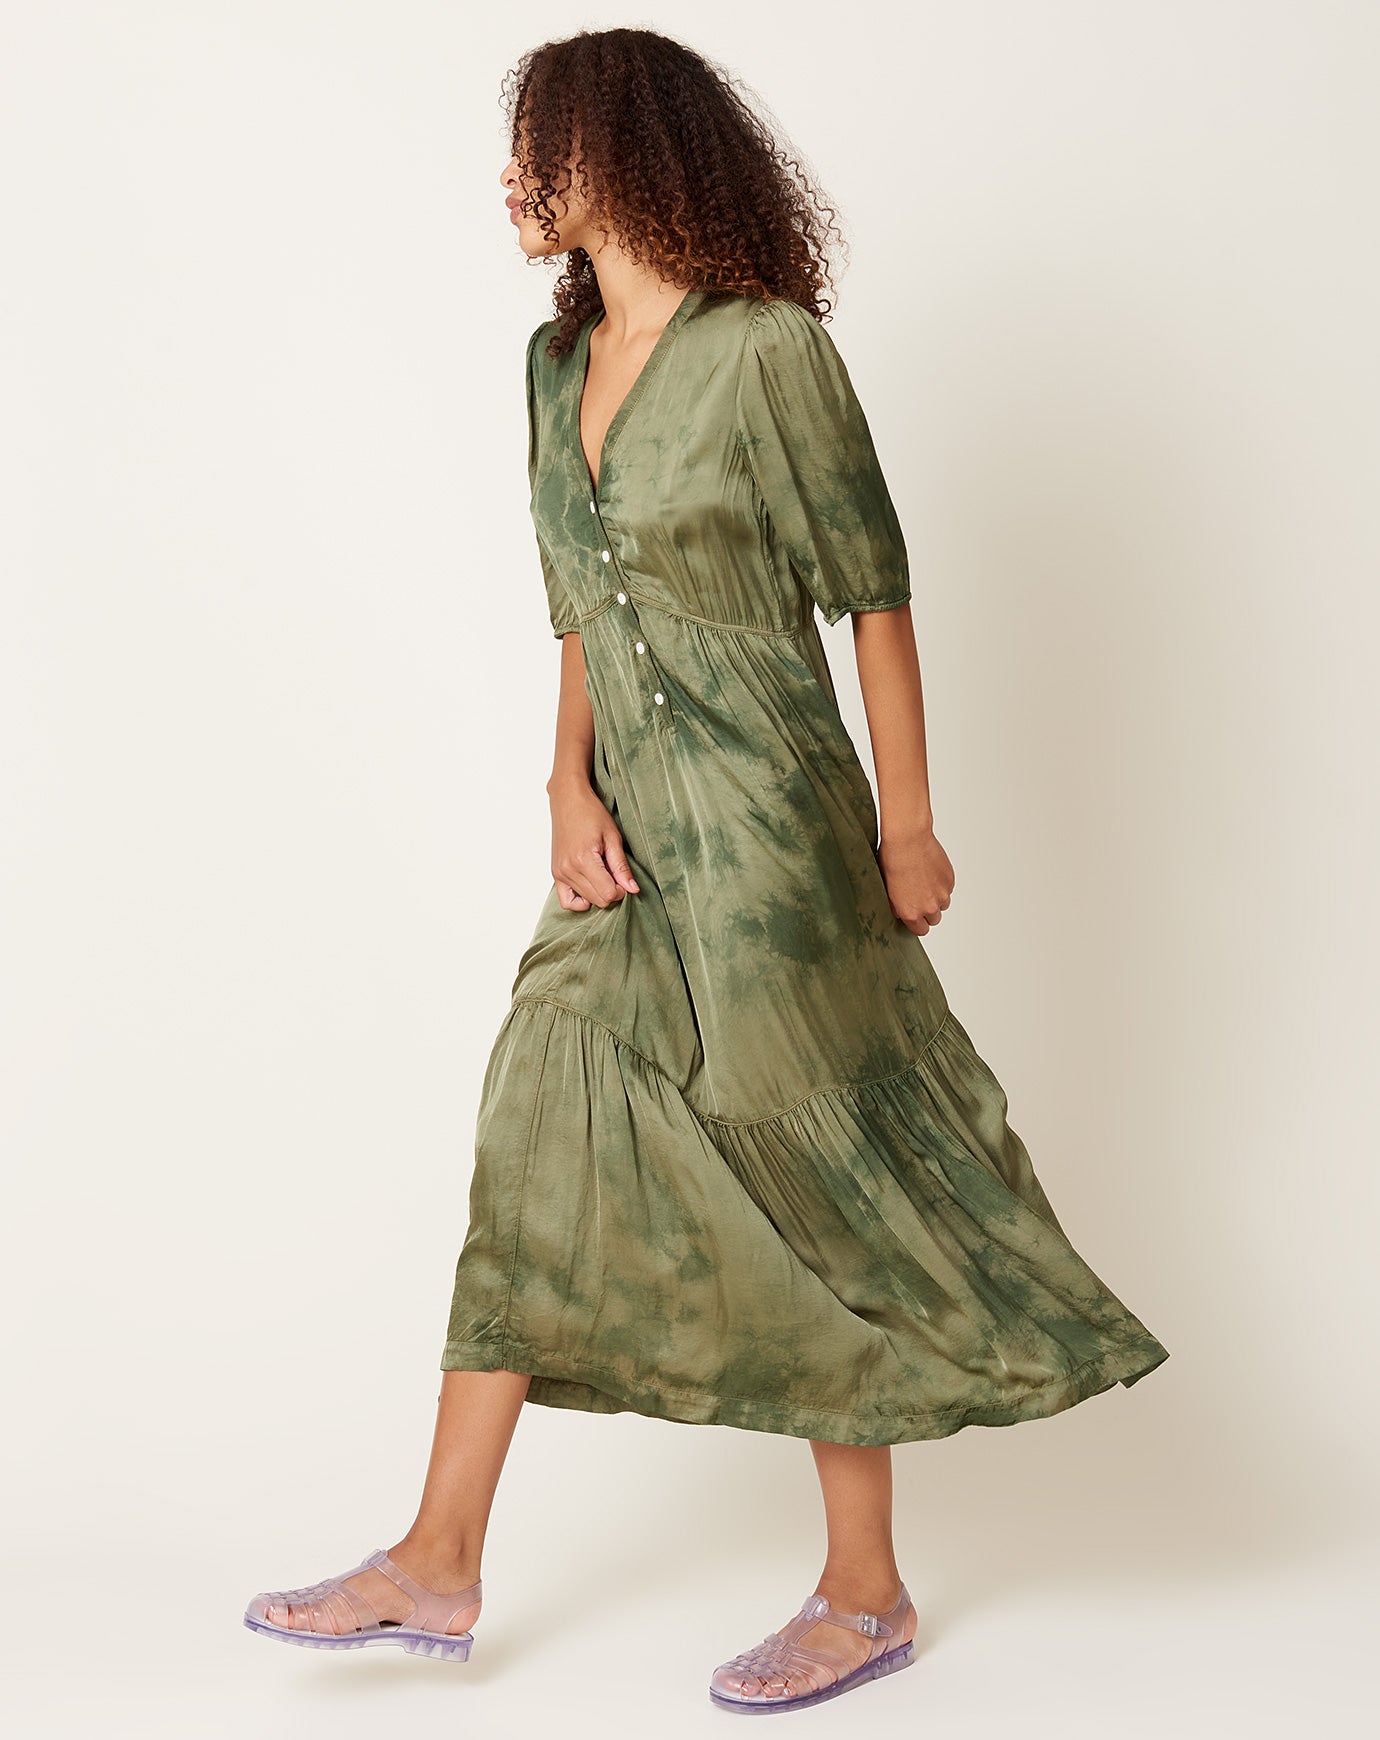 Raquel Allegra Perfect Dress in Moss Hand Dye